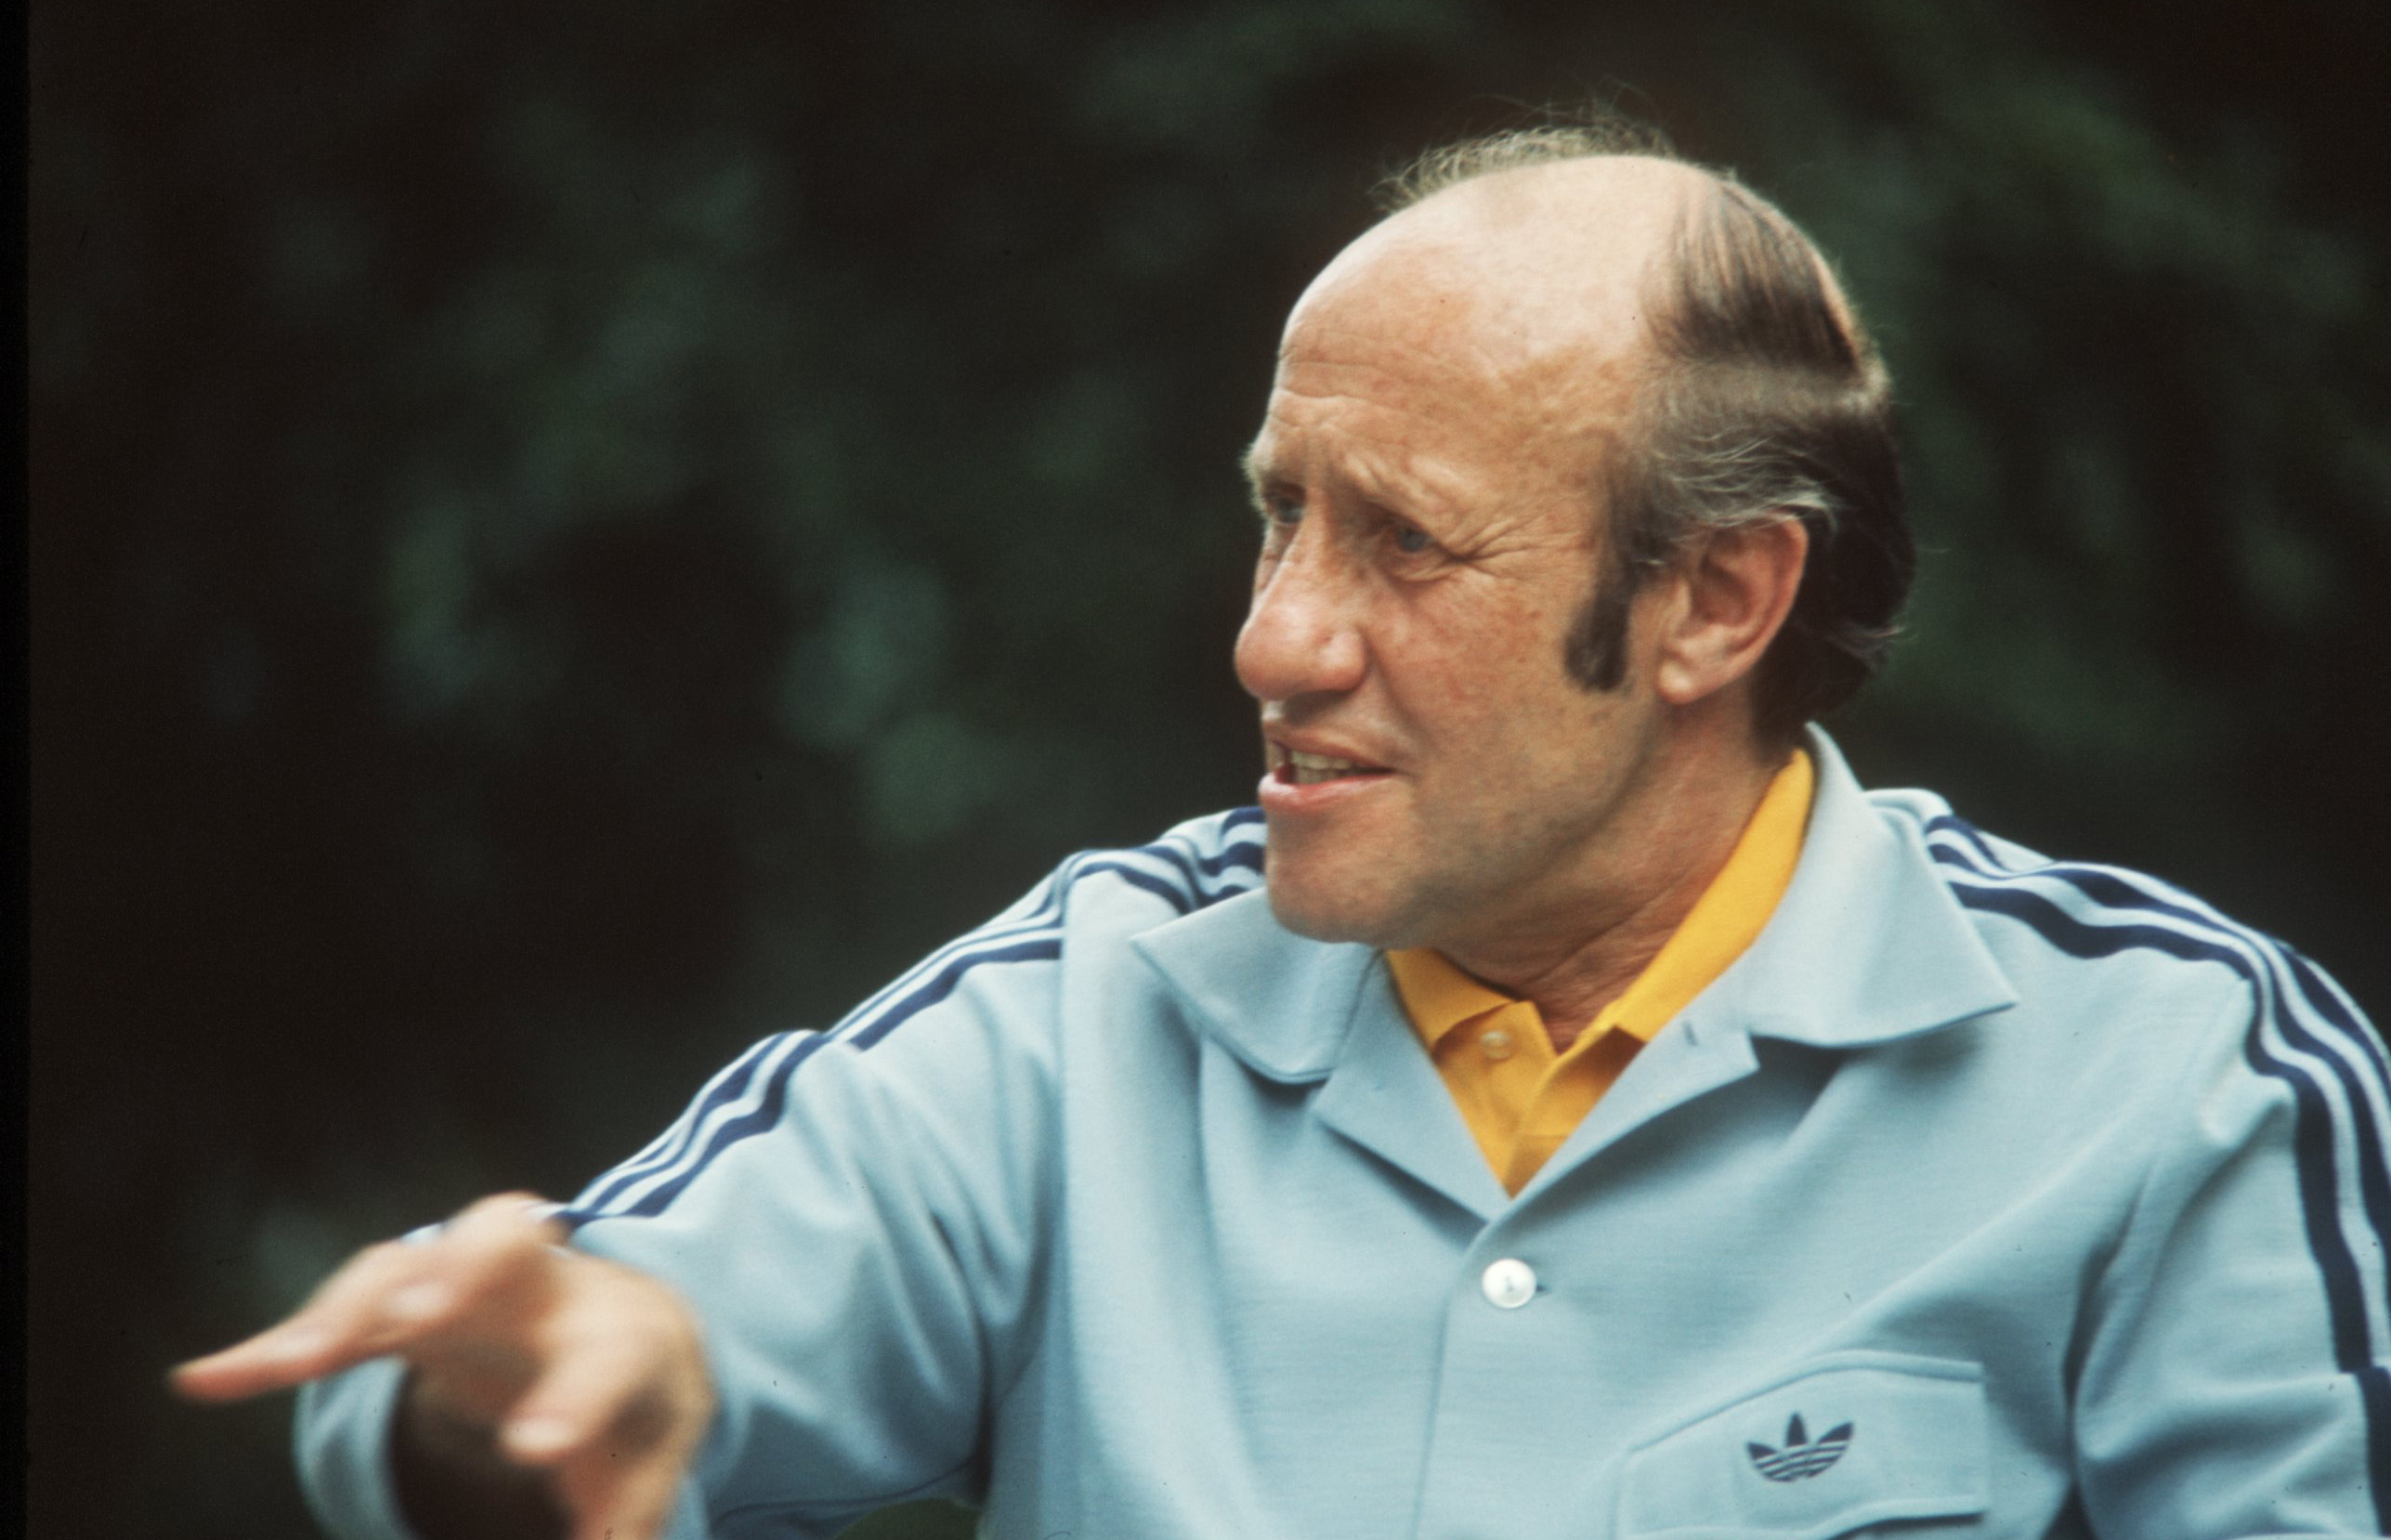 Helmut Schön fue líder de Alemania Federal en su título de 1974. Tallsport UK/ALLSPORT